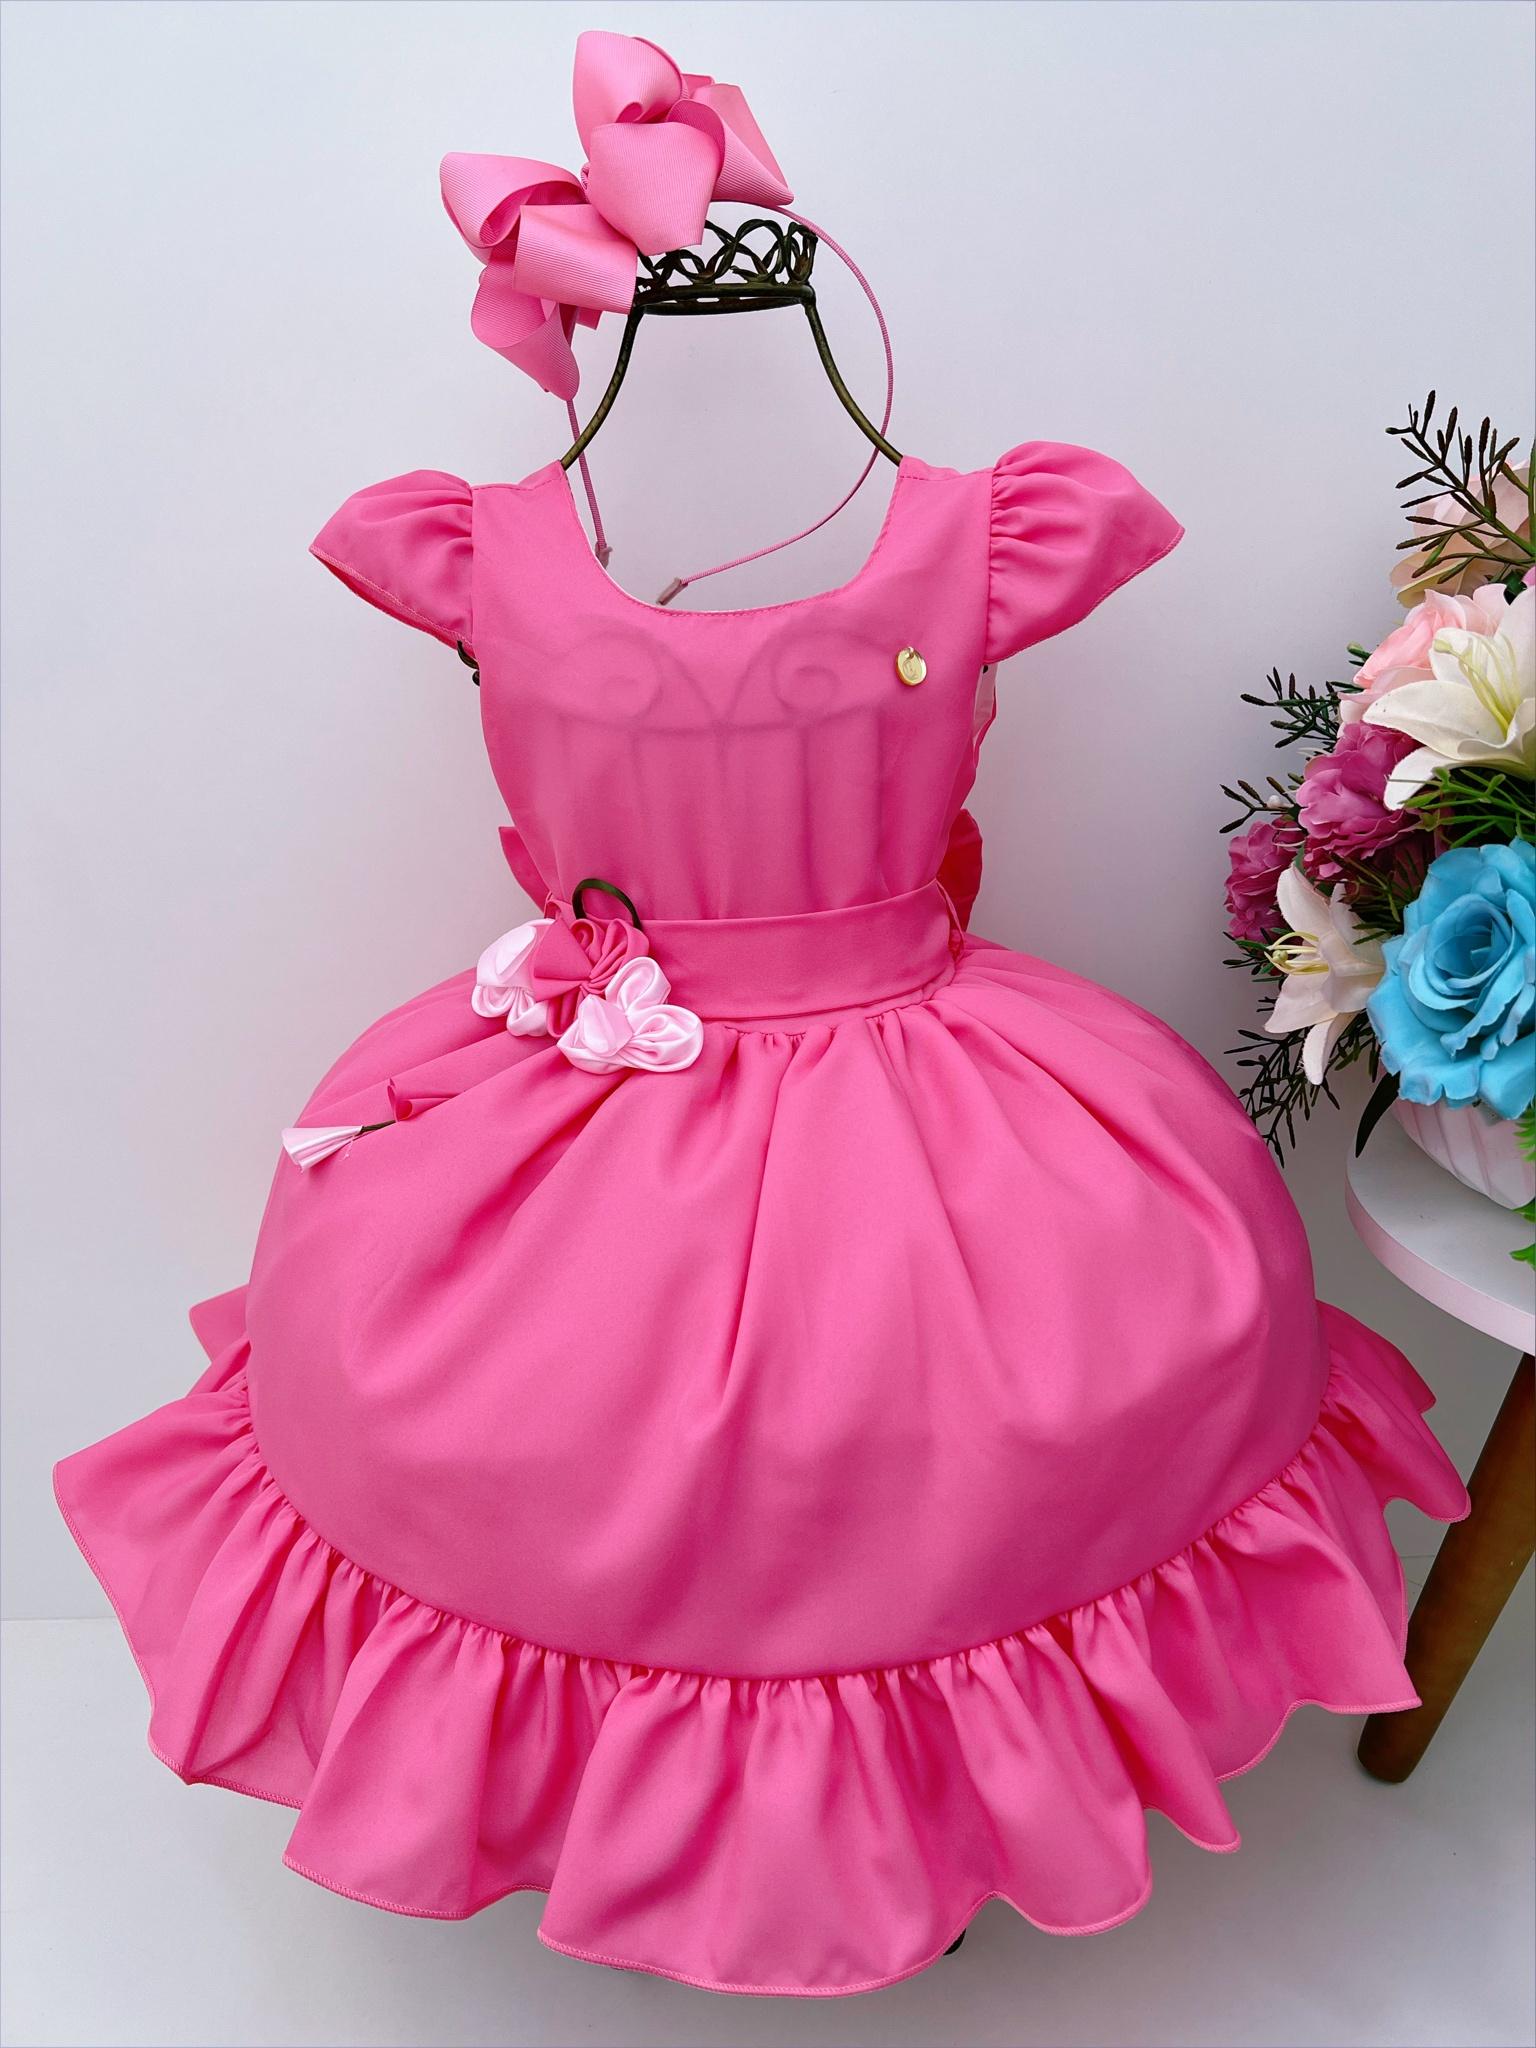 Vestido Infantil Rosa Chiclete C/ Broche de Flores Luxo